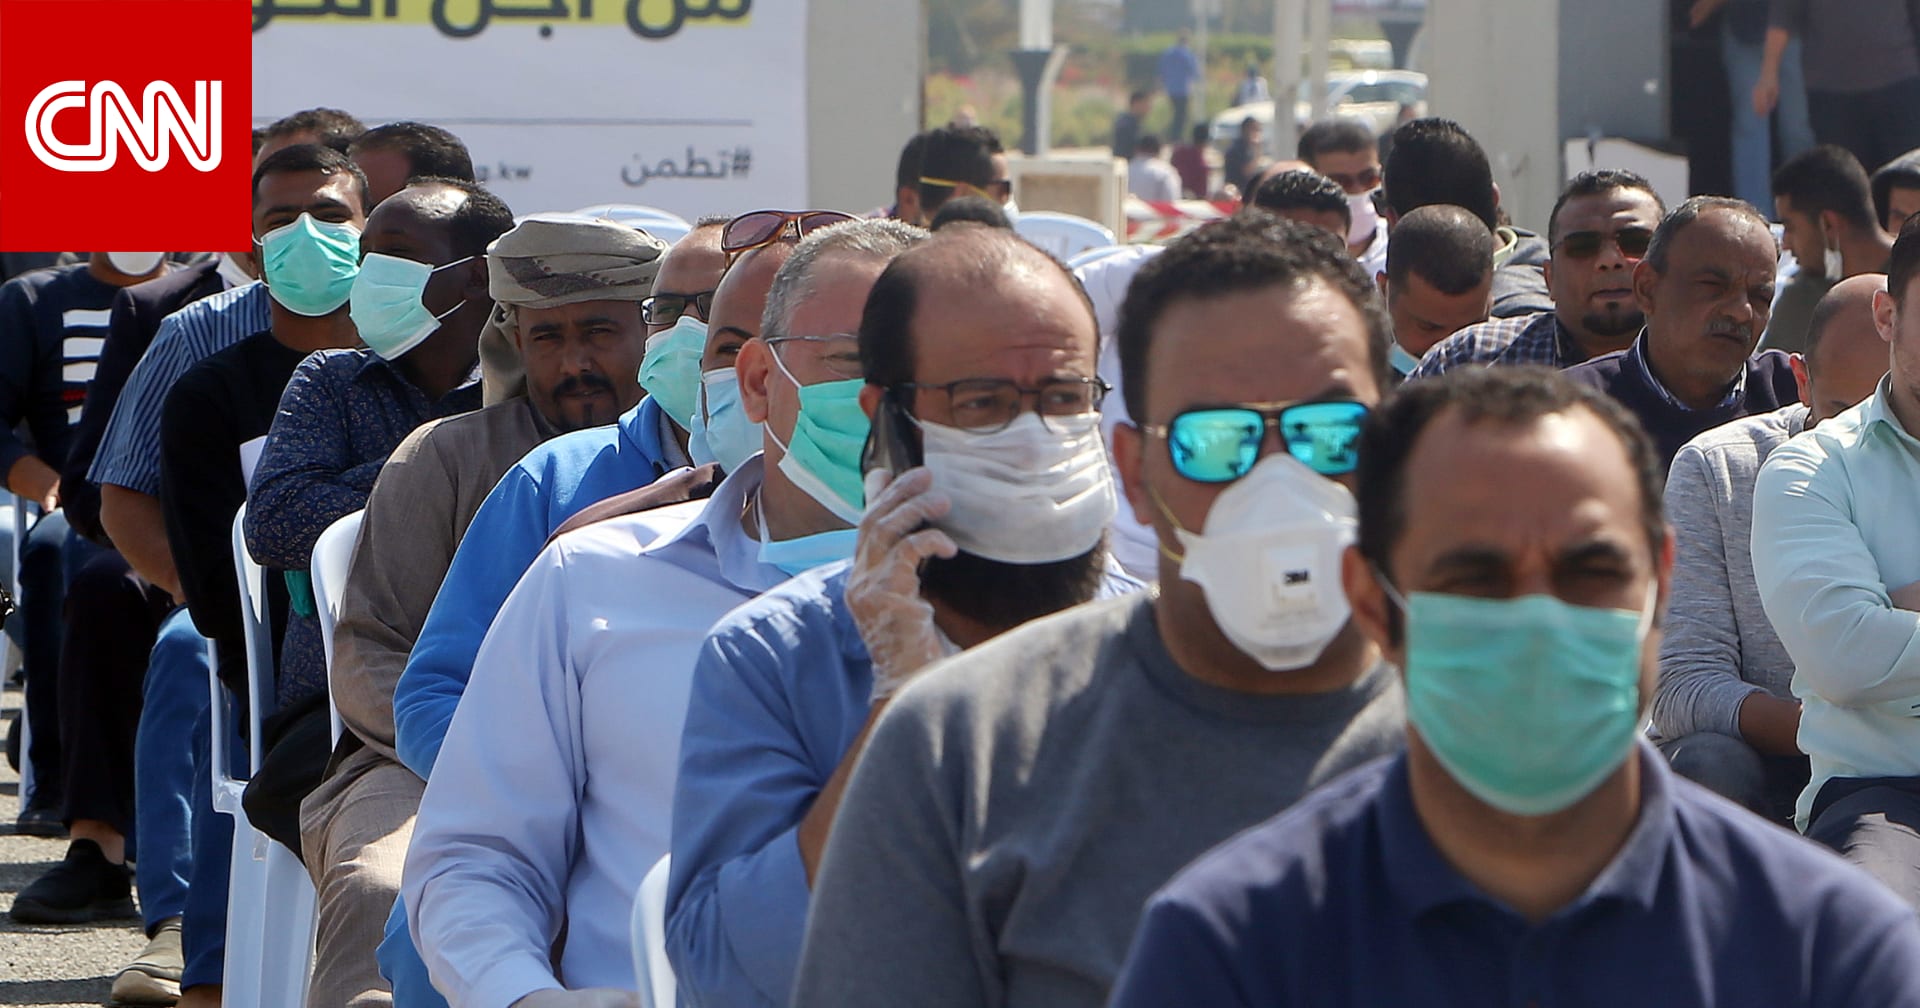 7 إصابات جديدة بفيروس كورونا في الكويت.. والأردن يسجل 33 حالة - CNN Arabic